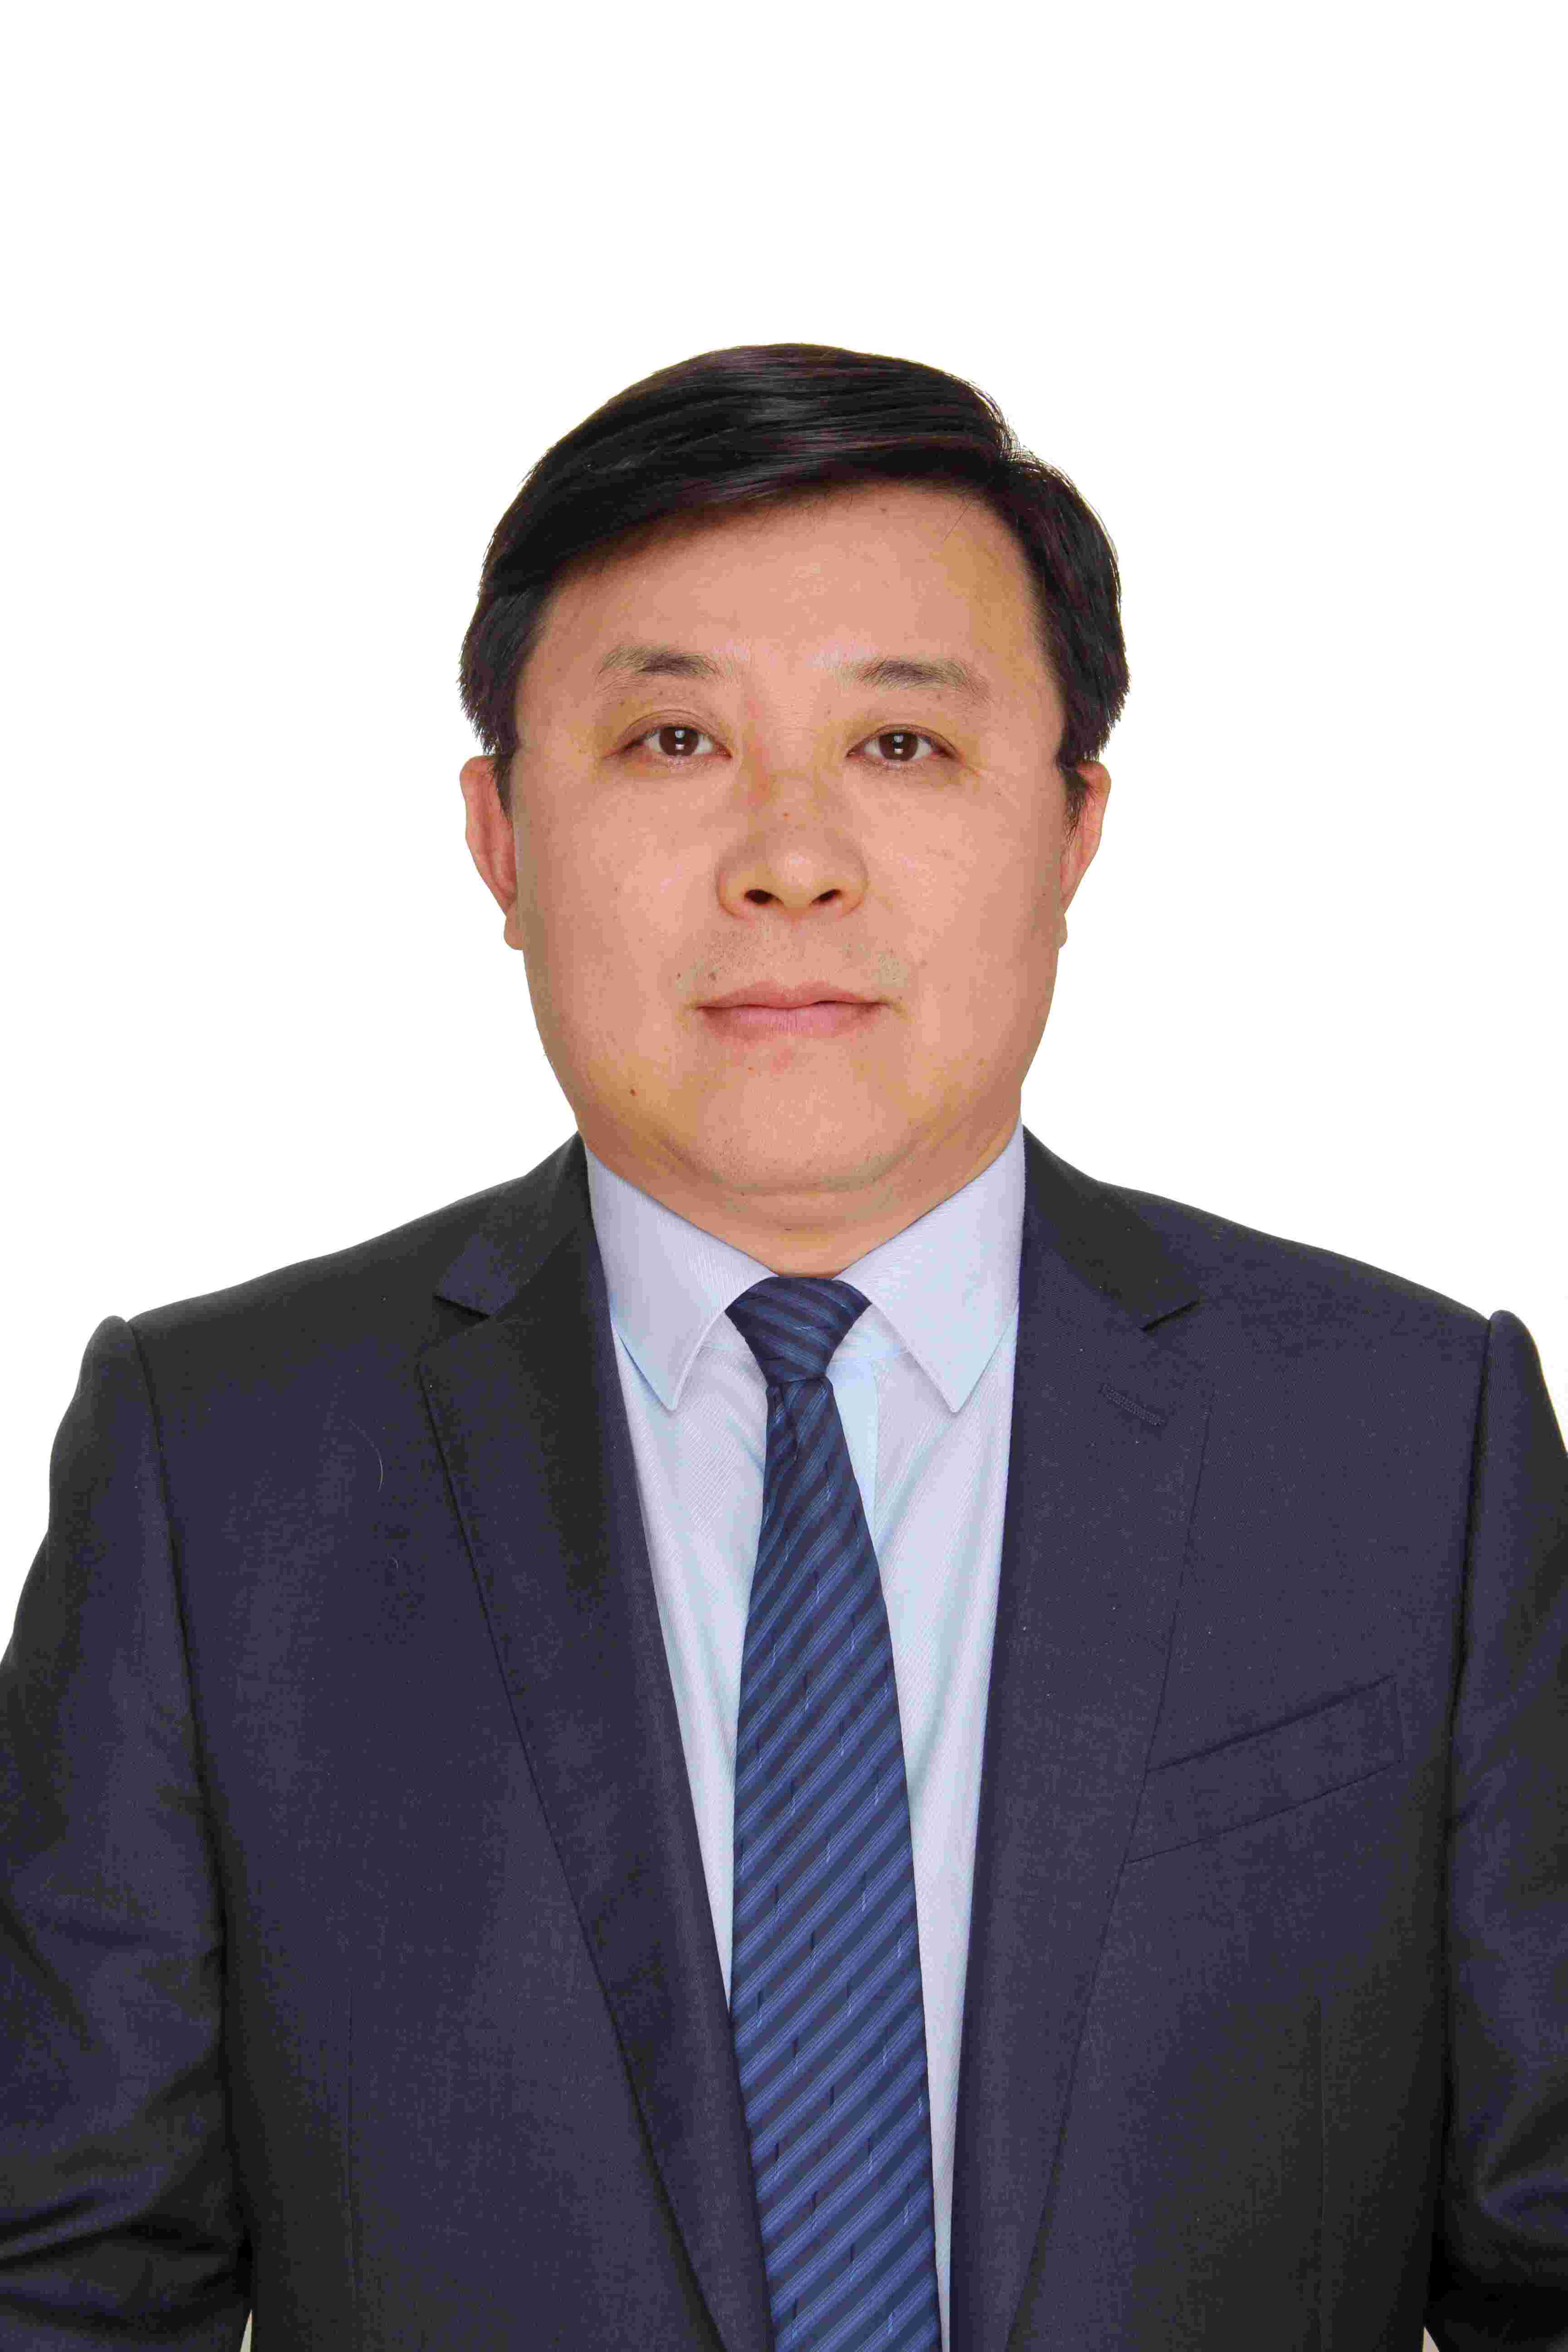 Prof. Bingfeng Shi